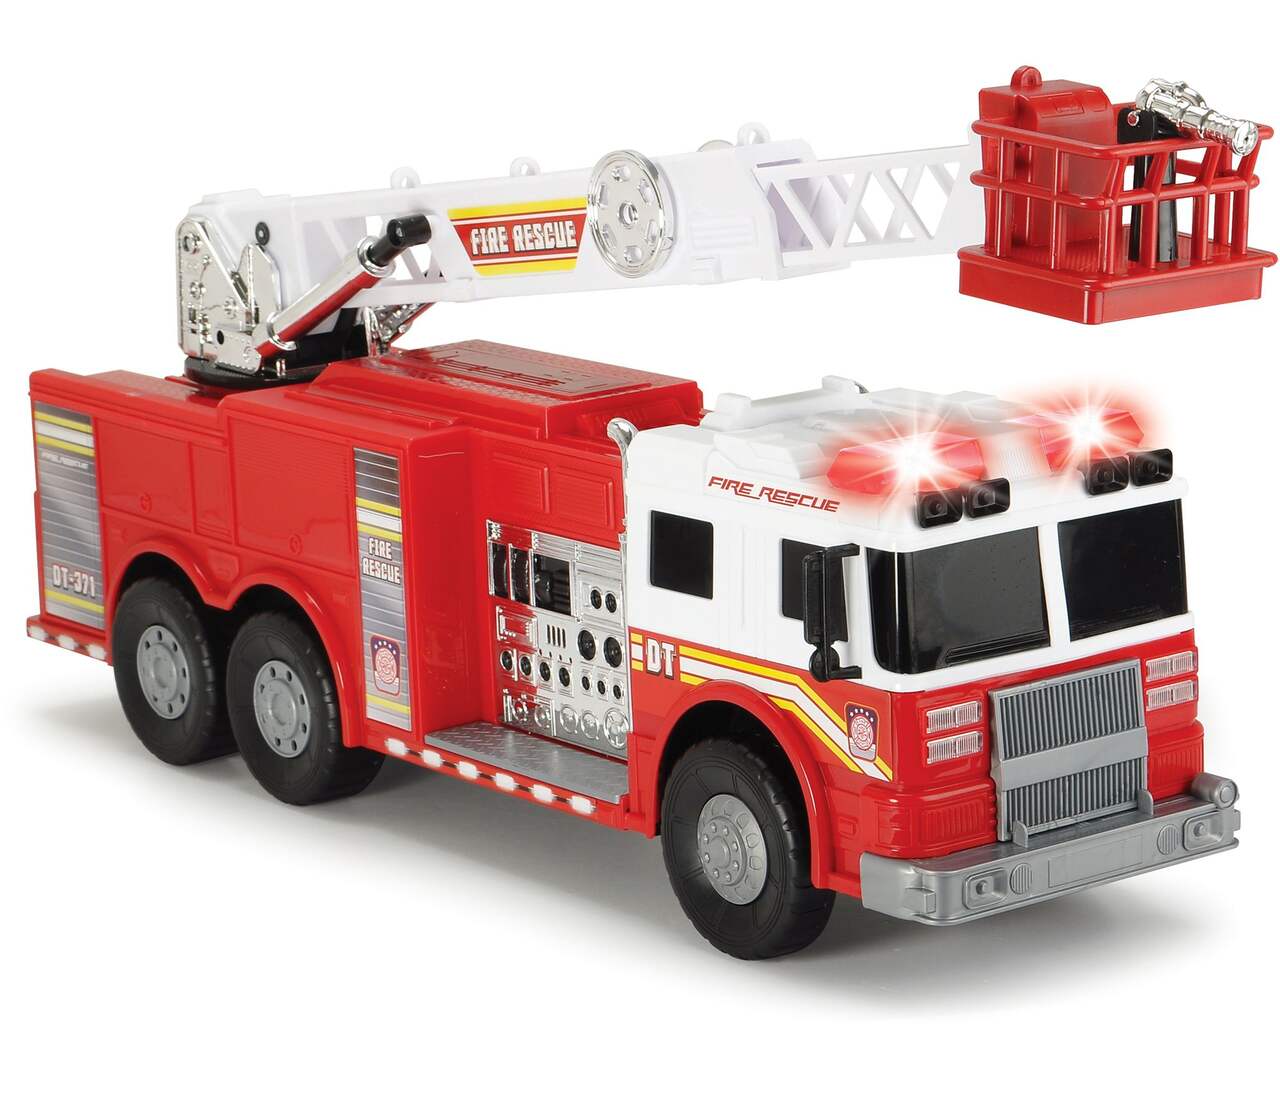 Dickie - Camion de Pompiers - Fonctions Sonores et Lumineuses - Echelle  Extensible - 23cm - Dès 3 Ans - 203714011002